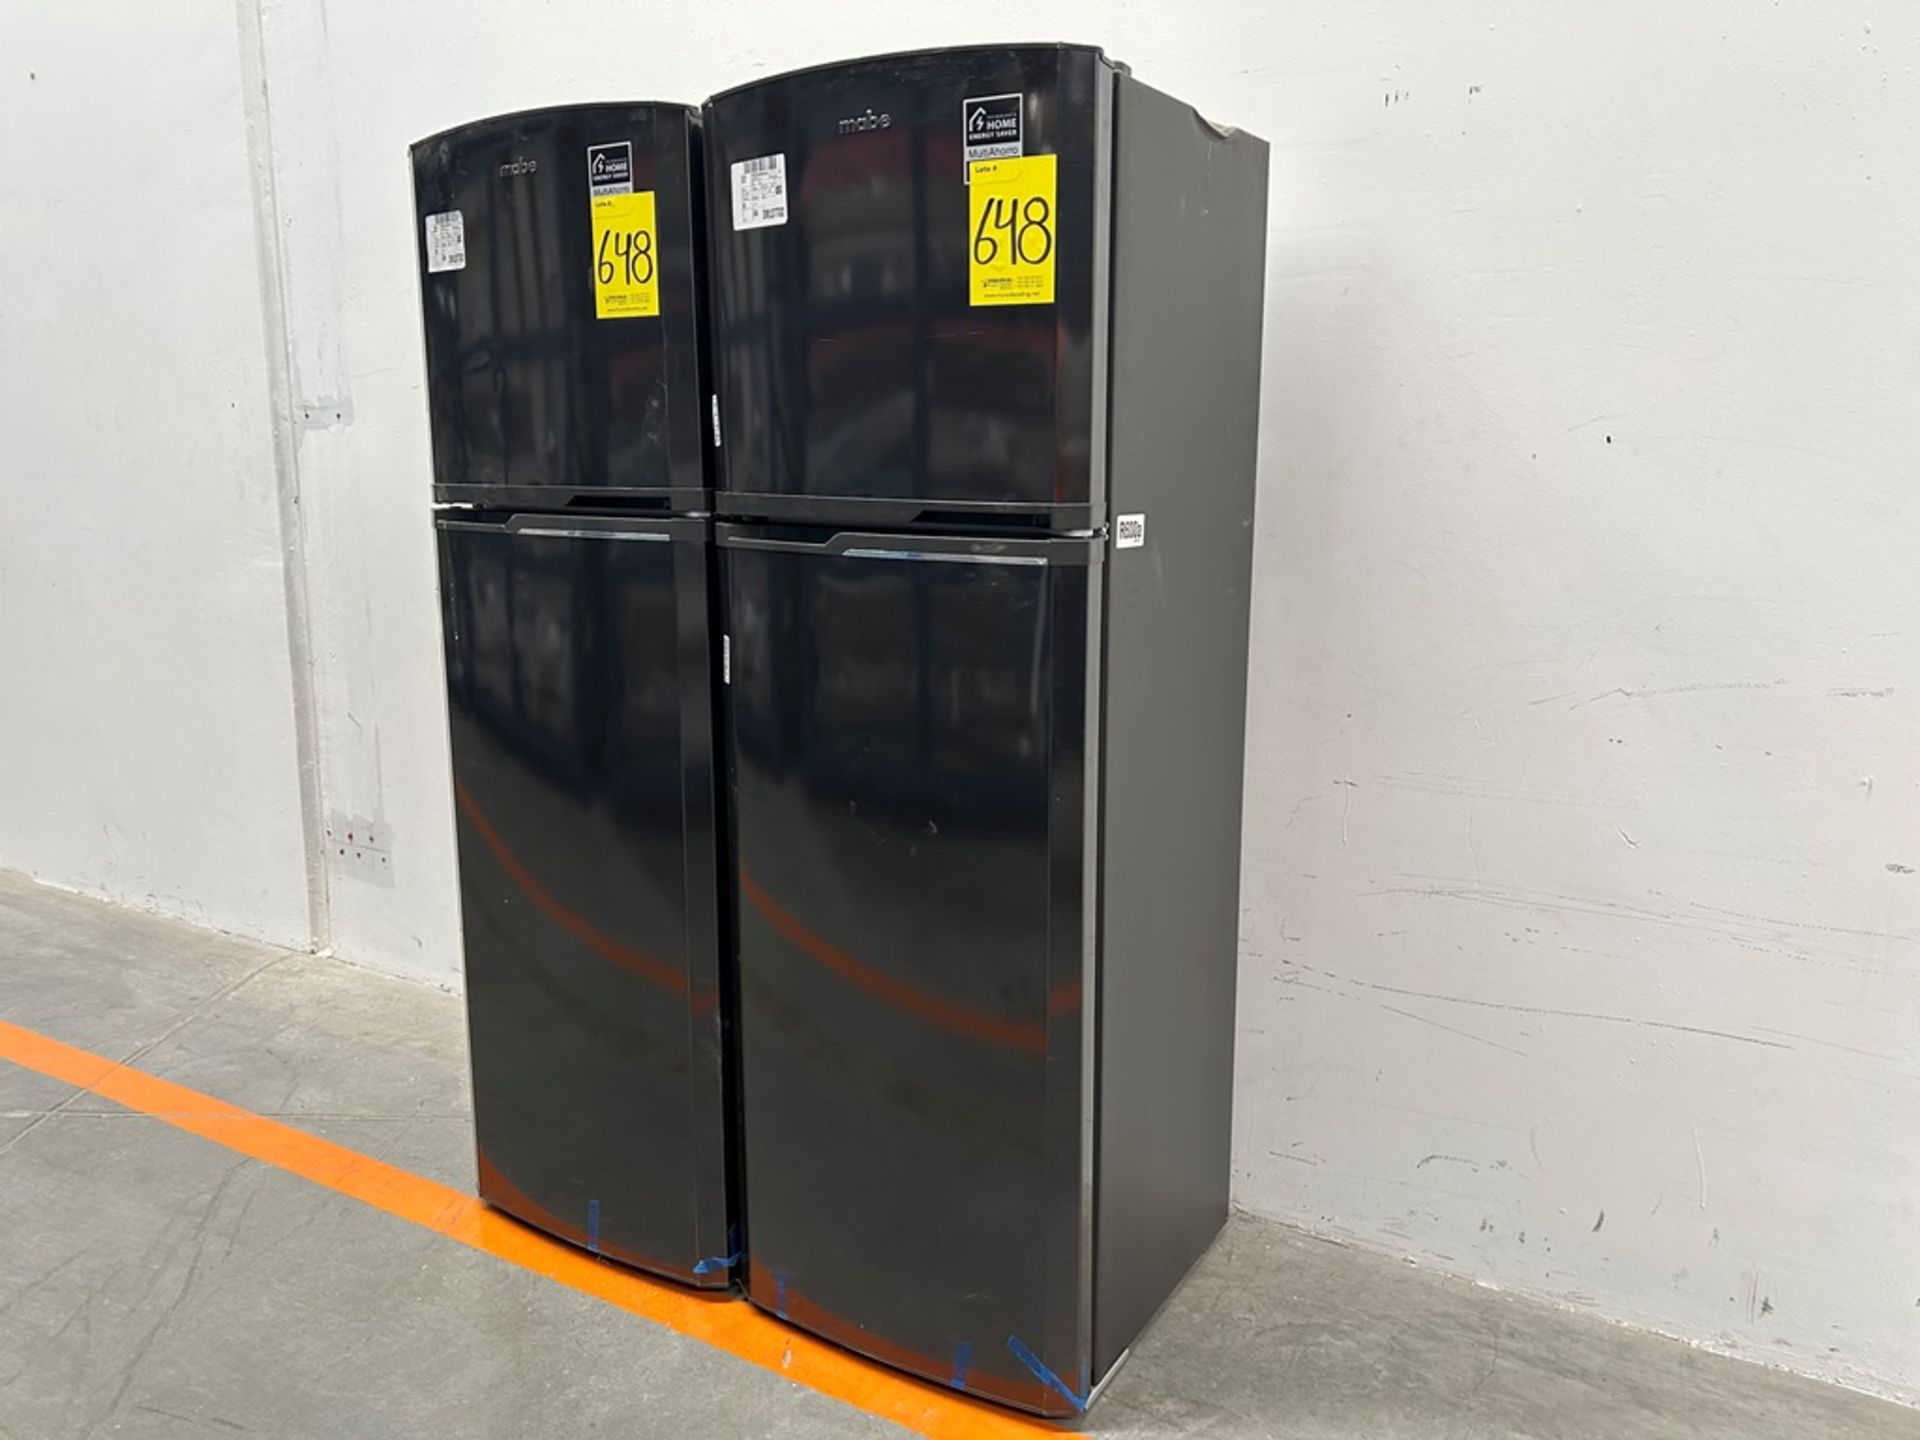 Lote de 2 refrigeradores contiene: 1 refrigerador Marca MABE, Modelo RMA250PVMRP0, Serie 13859, Col - Image 2 of 18